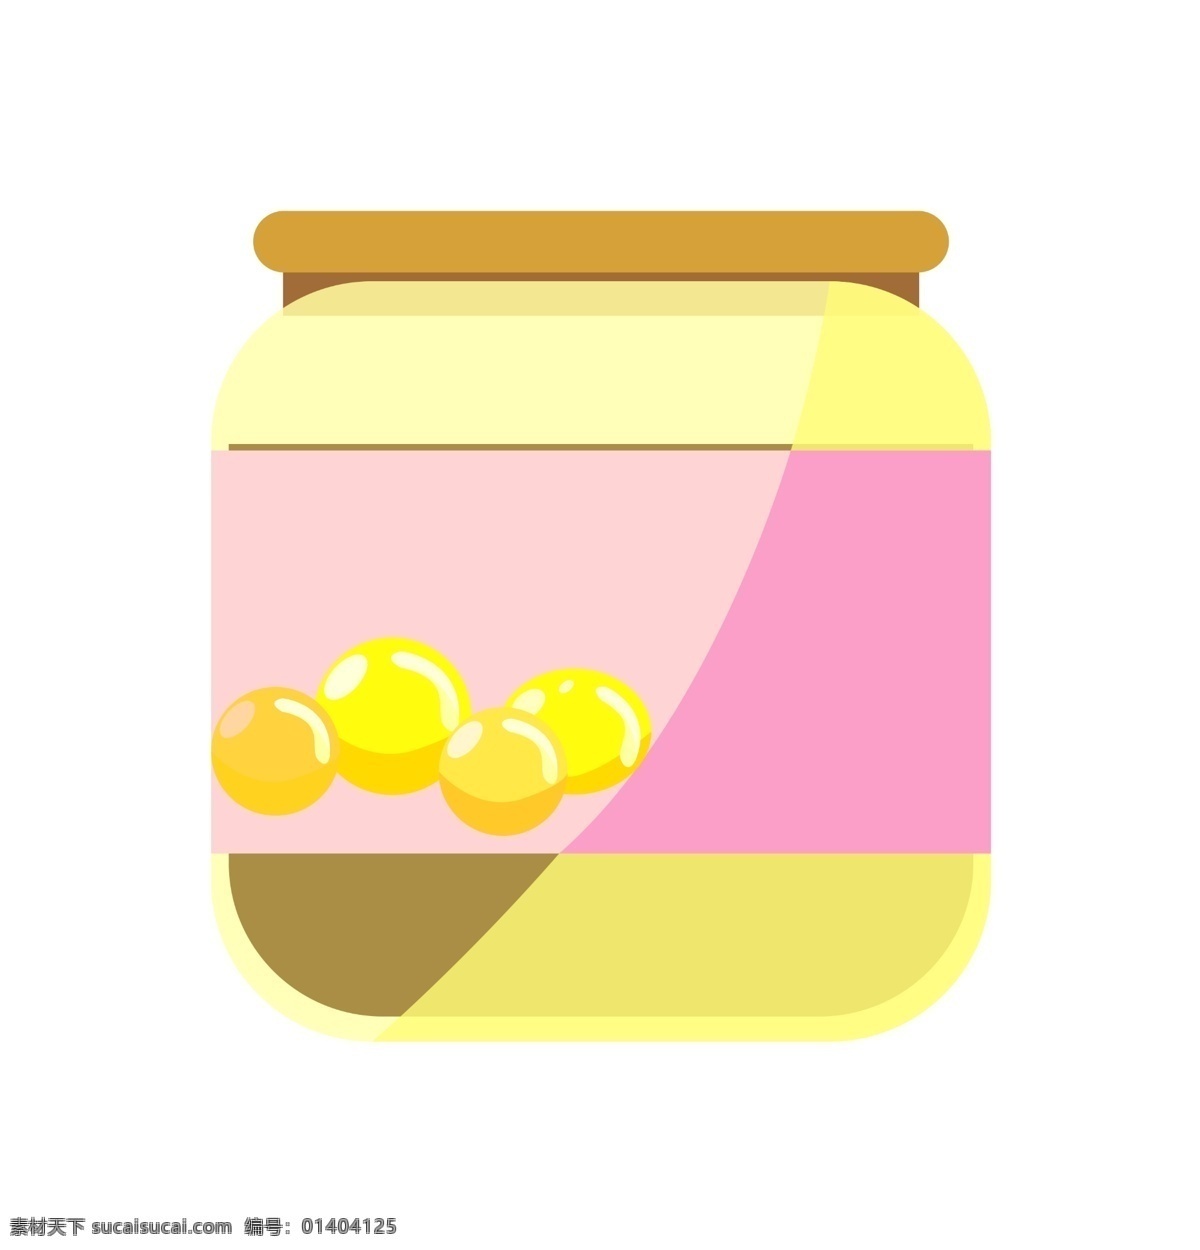 卡通 罐装 黄豆 酱 插画 黄豆酱 粉色的包装 透明的瓶子 卡通食材插画 调料 烹饪食材 罐装食材 食物插画